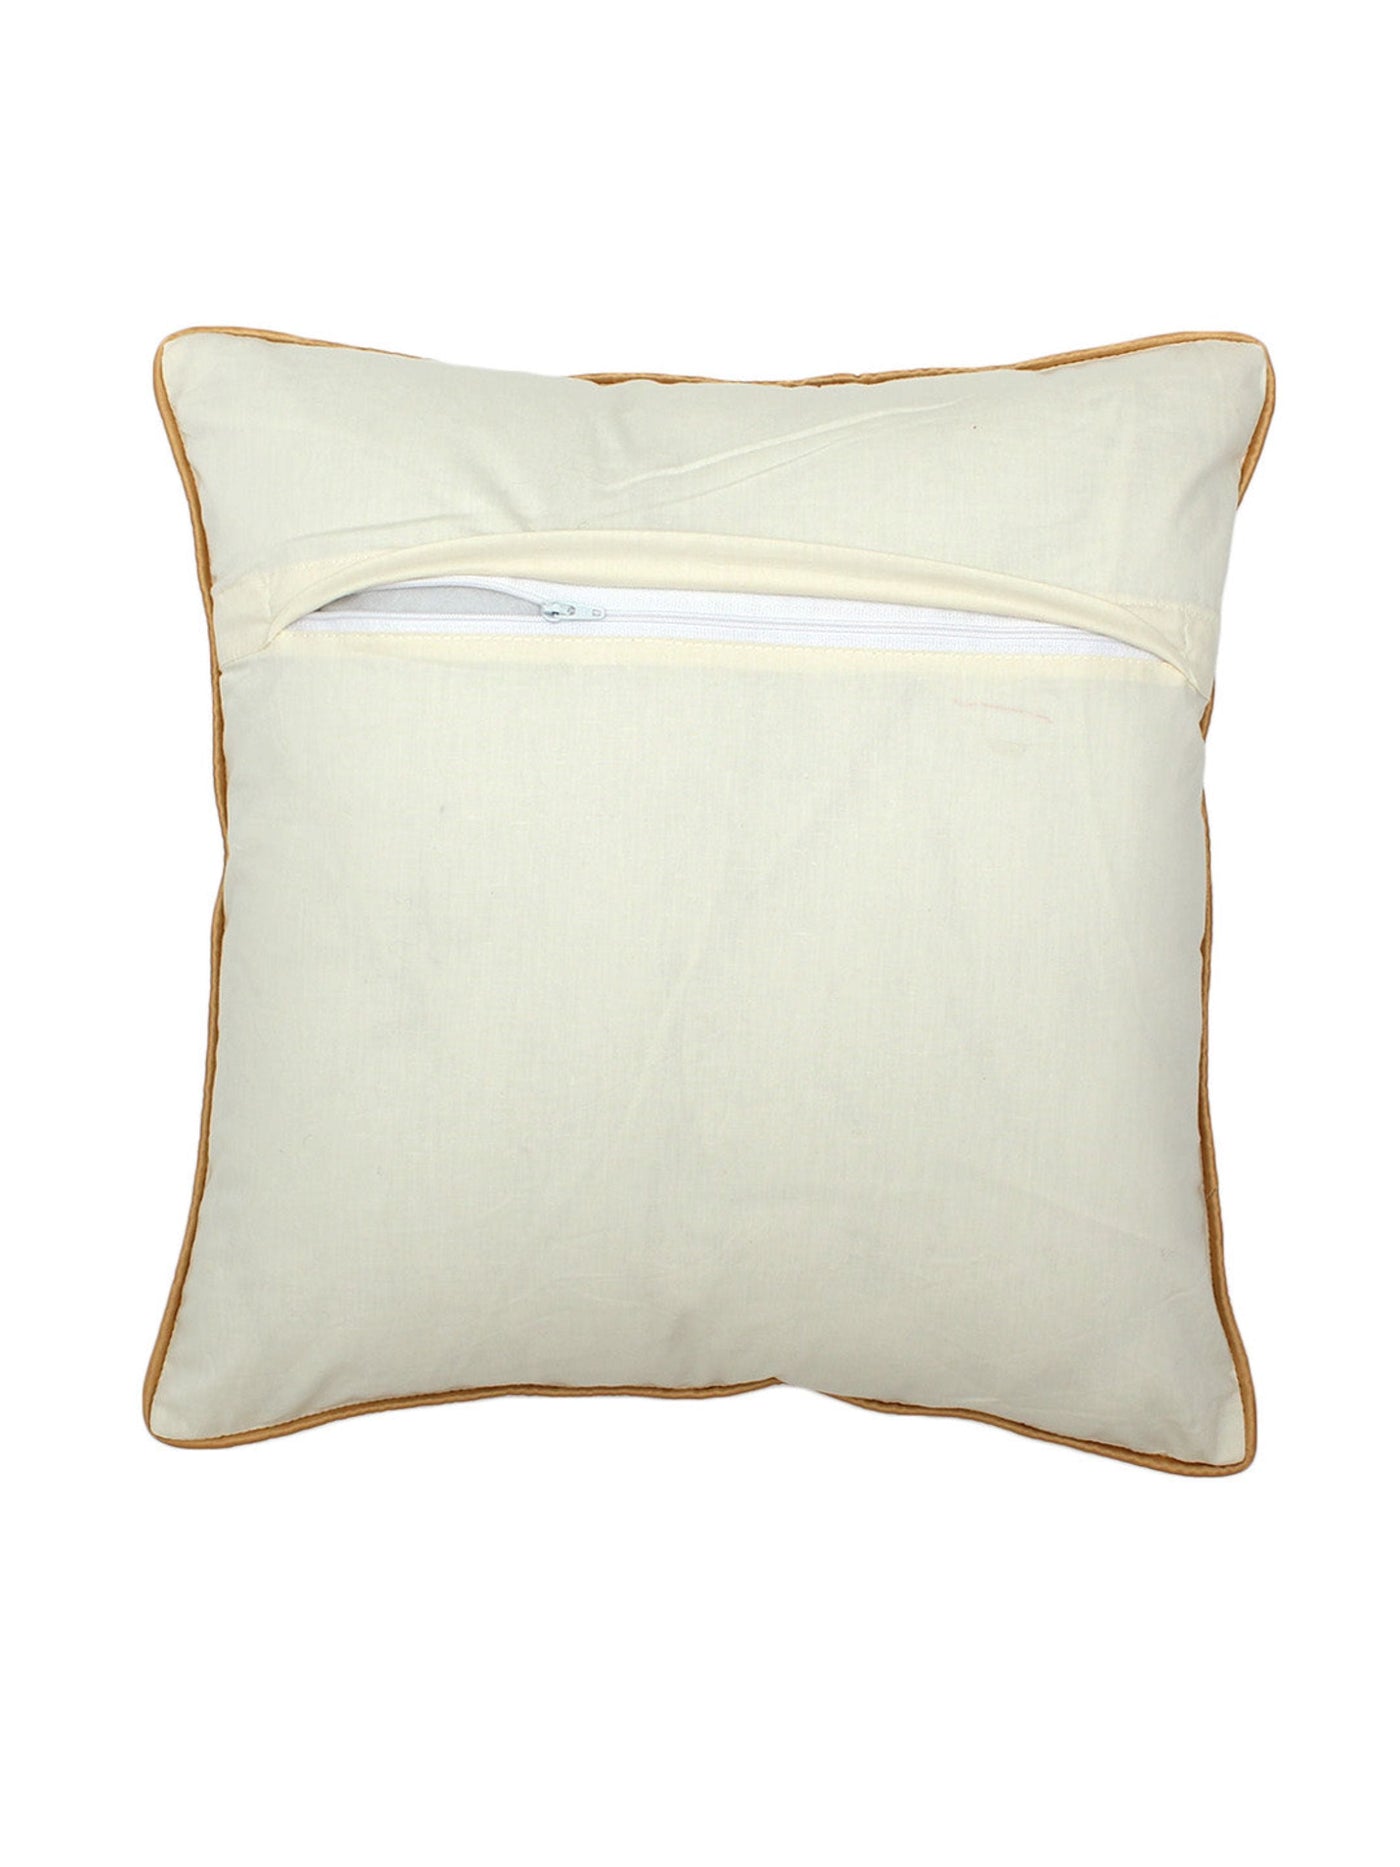 Cushion Cover - Chaupad (White Gold)